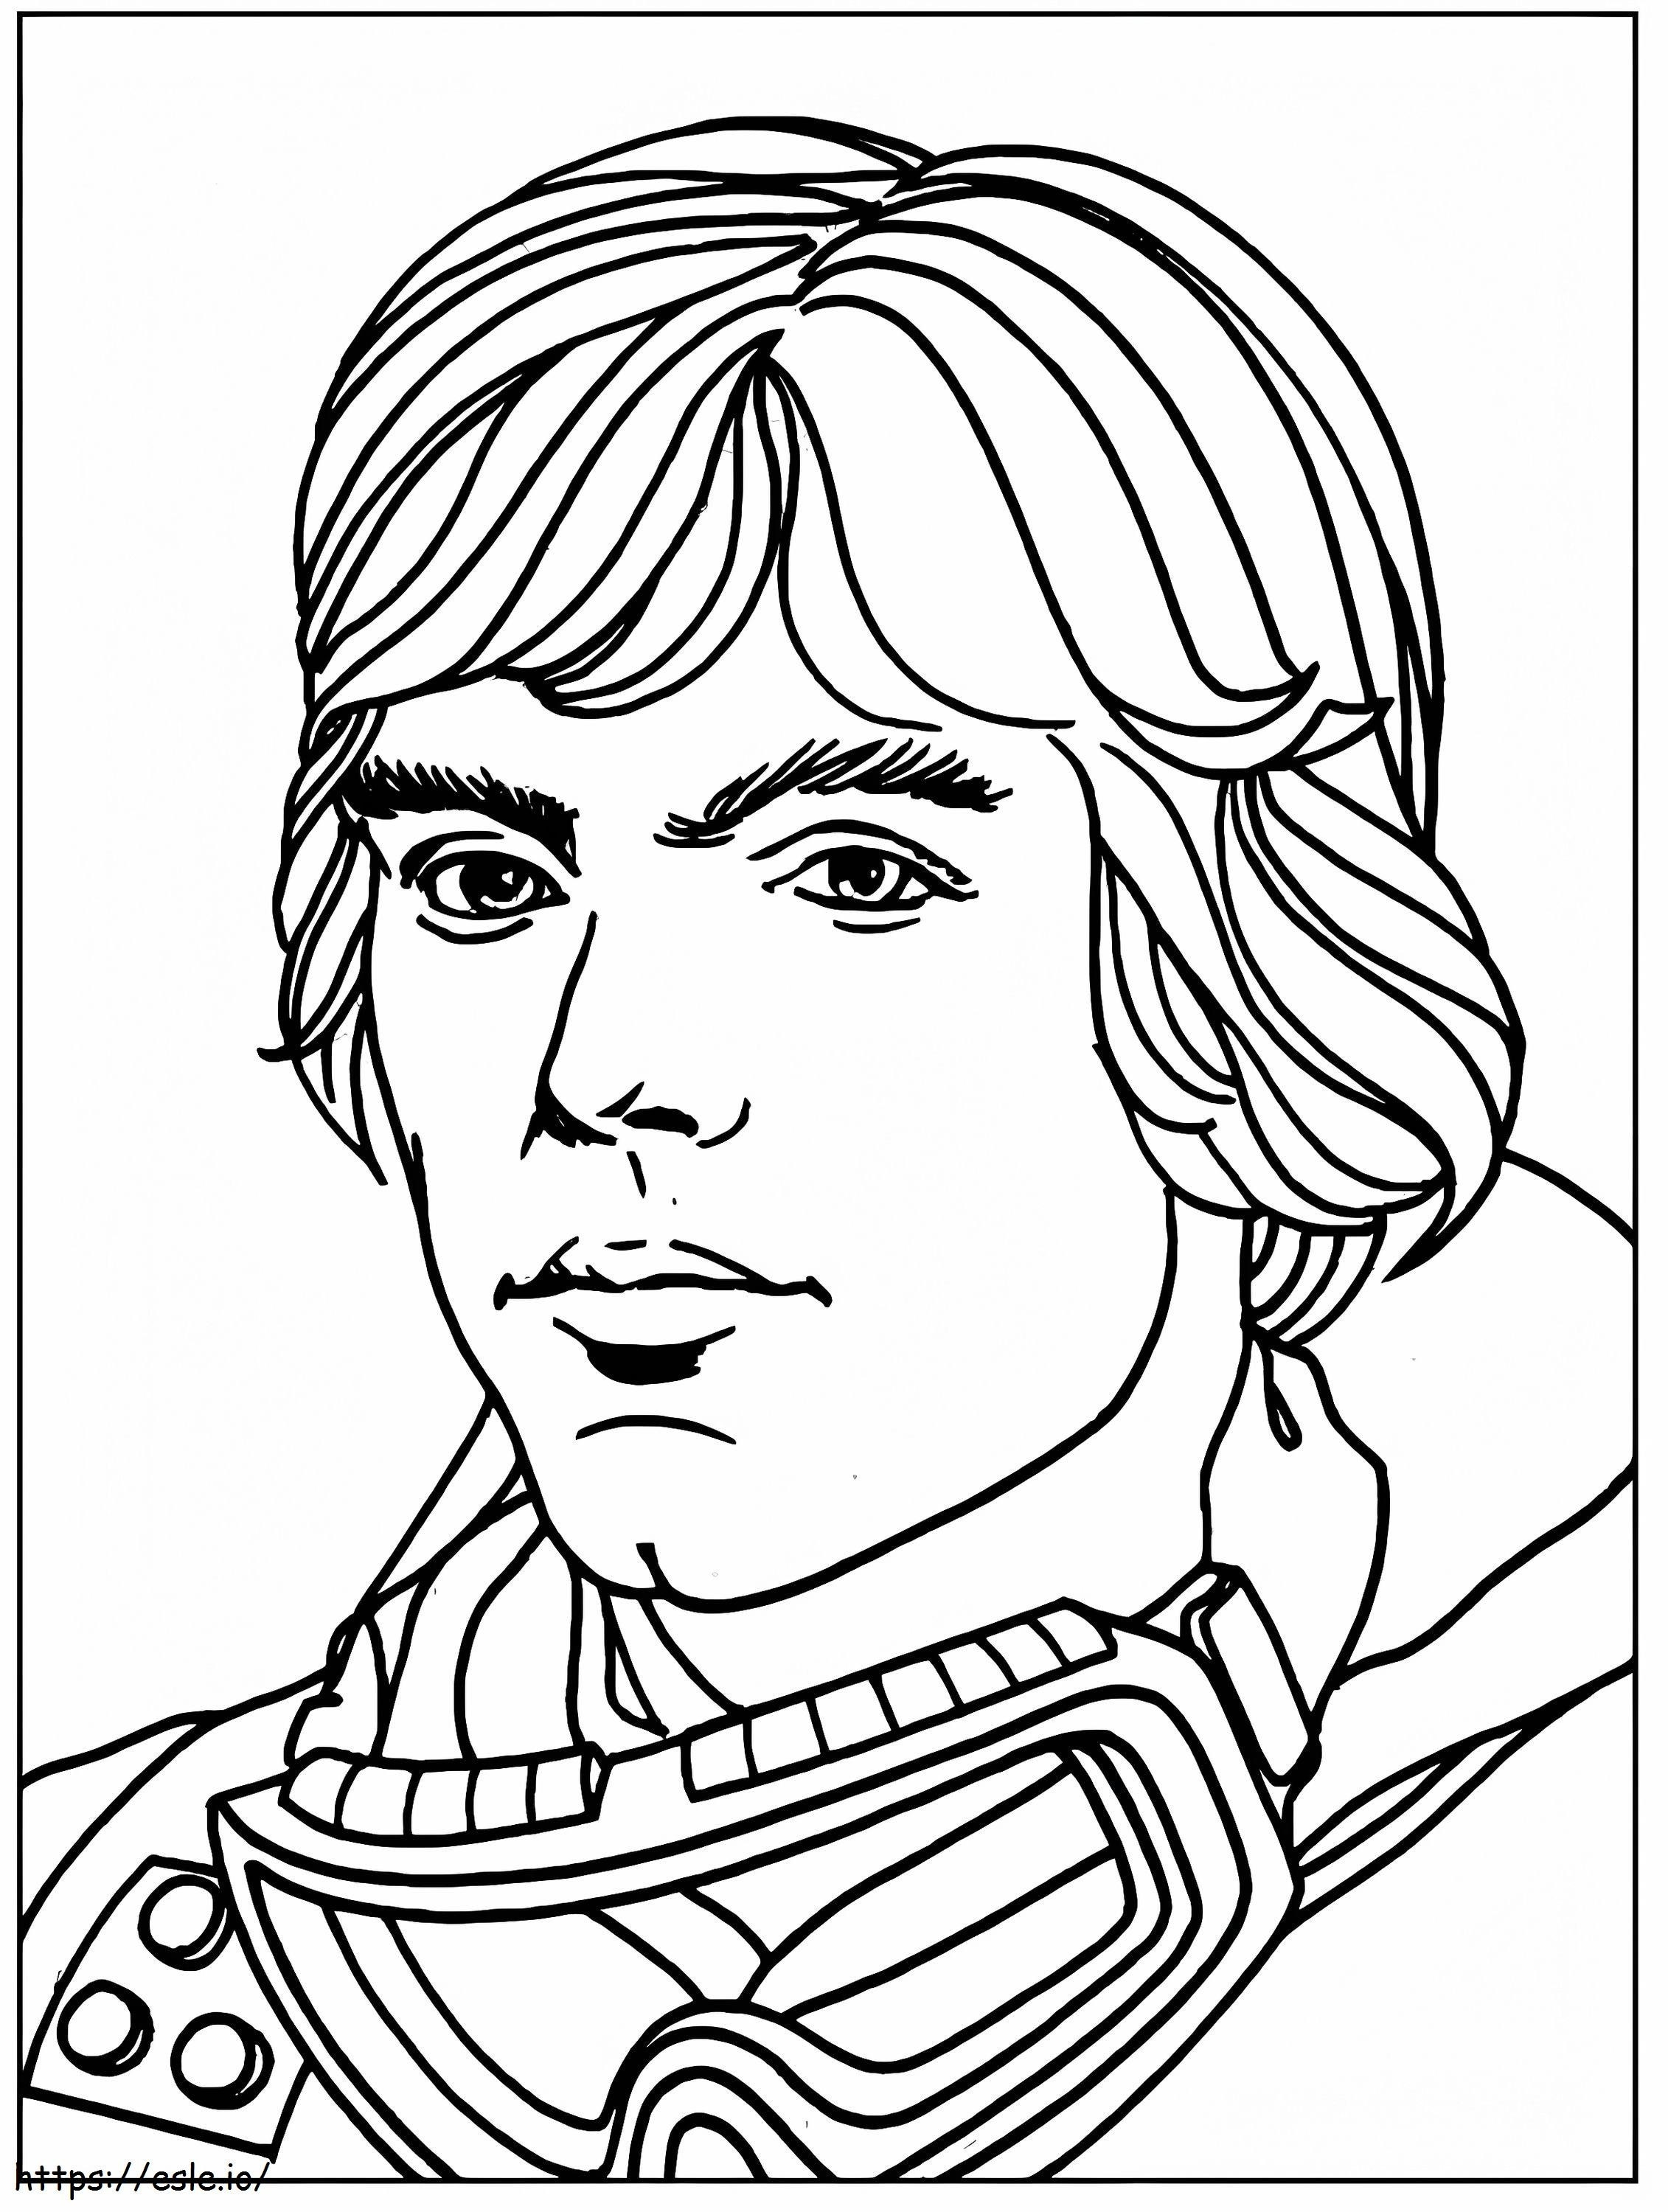 Luke Skywalker'ın Yüzü boyama